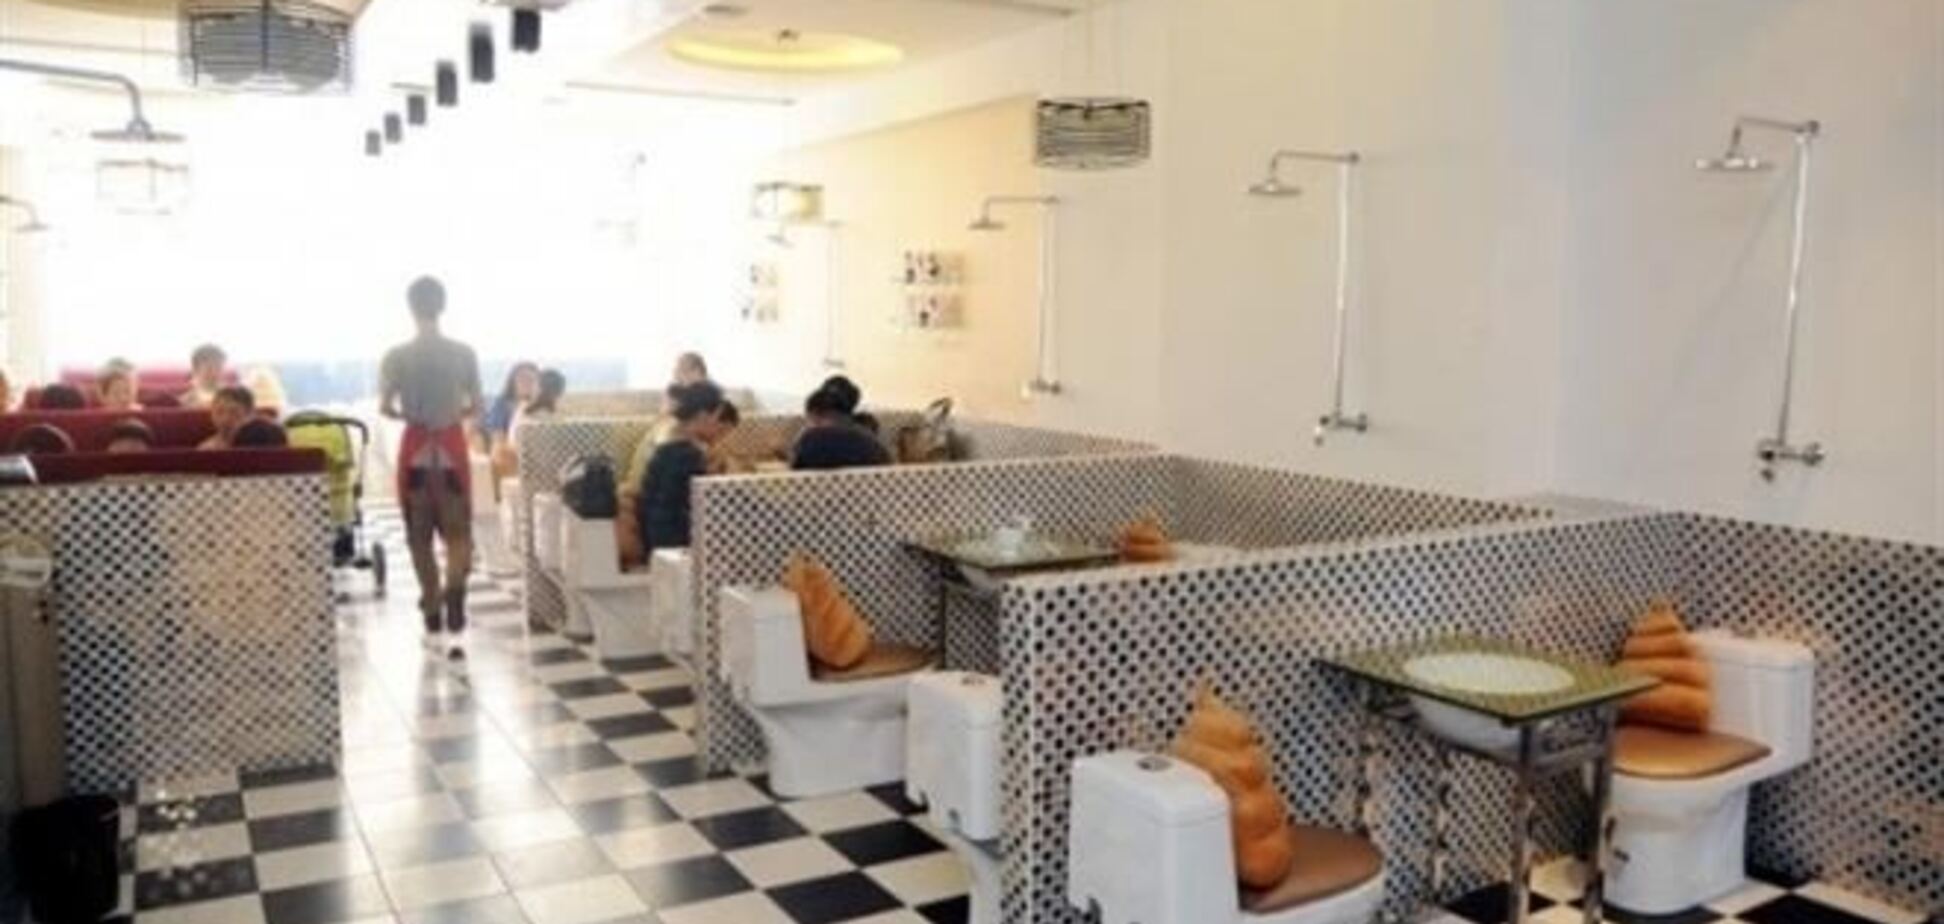 В Китае появились рестораны-туалеты. Фото